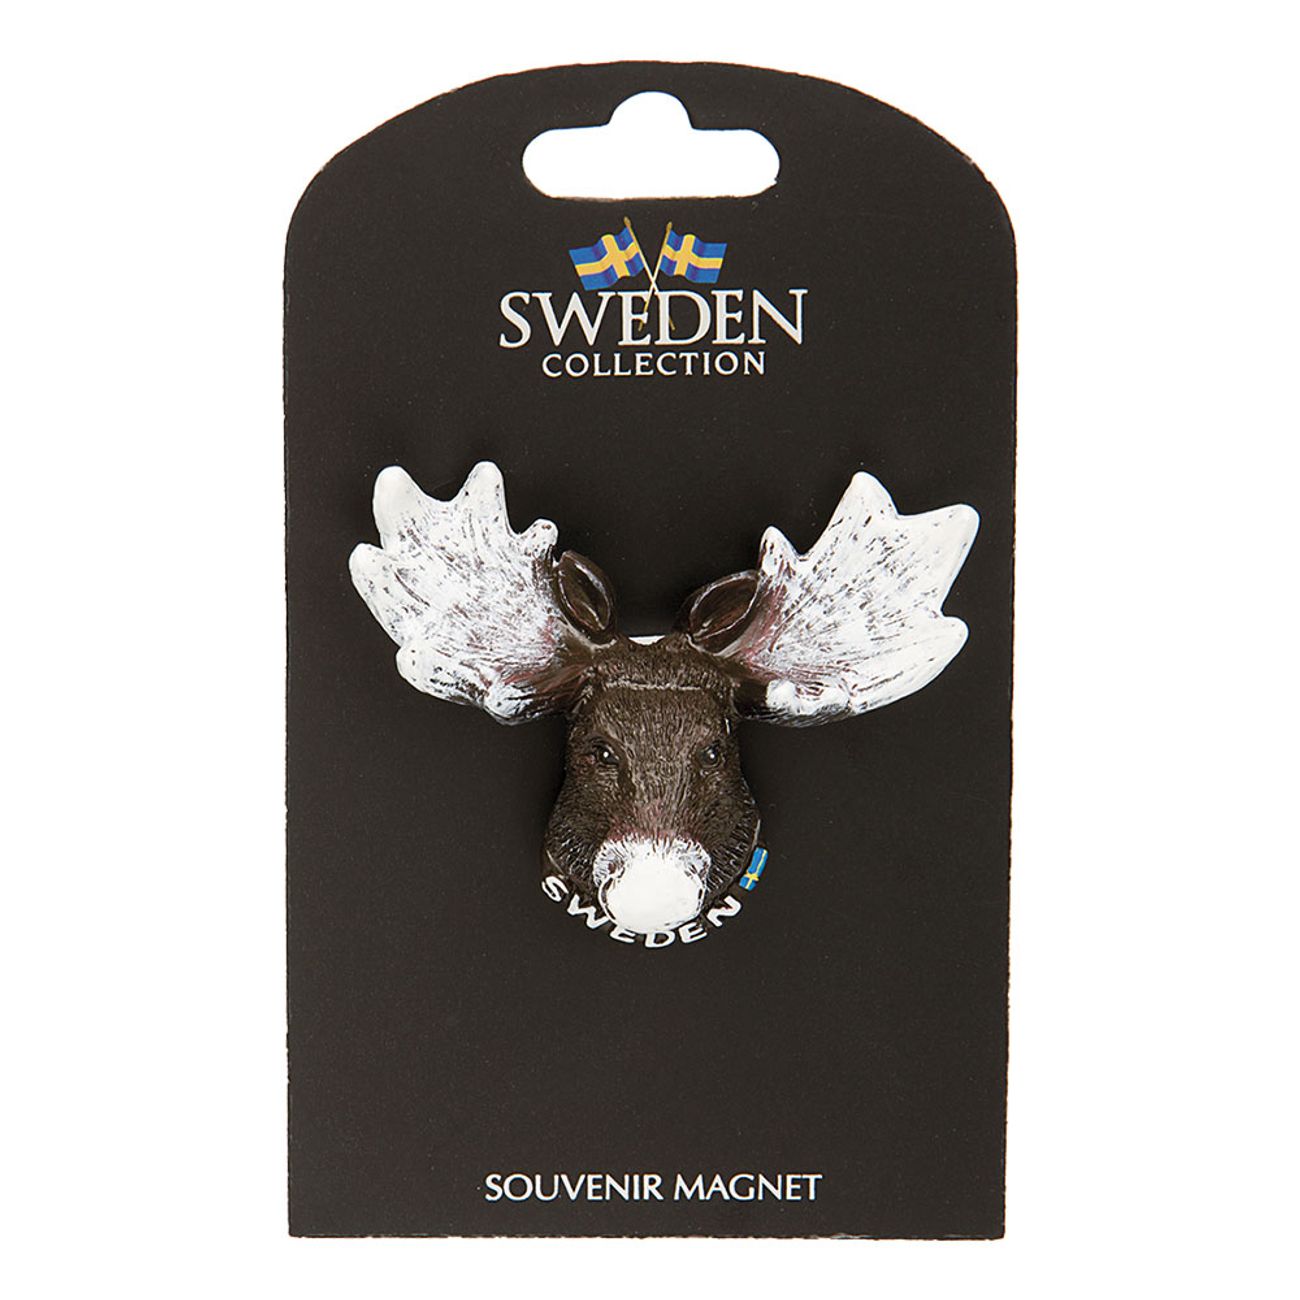 souvenir-magnet-sweden-alghuvud-1